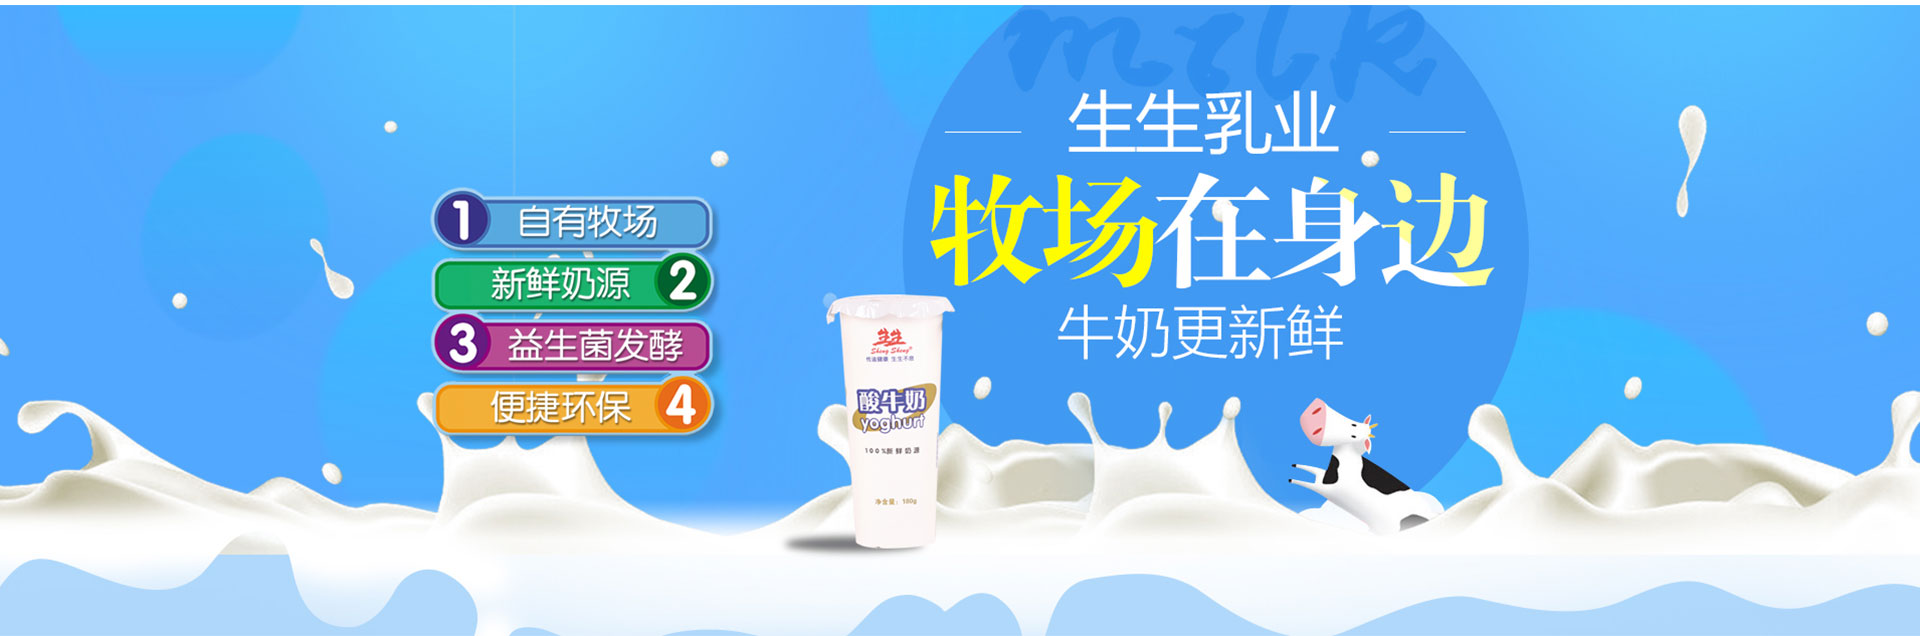 洛阳订奶_酸奶代理_酸奶招商_牛奶品牌-云顶集团(中国)股份有限公司